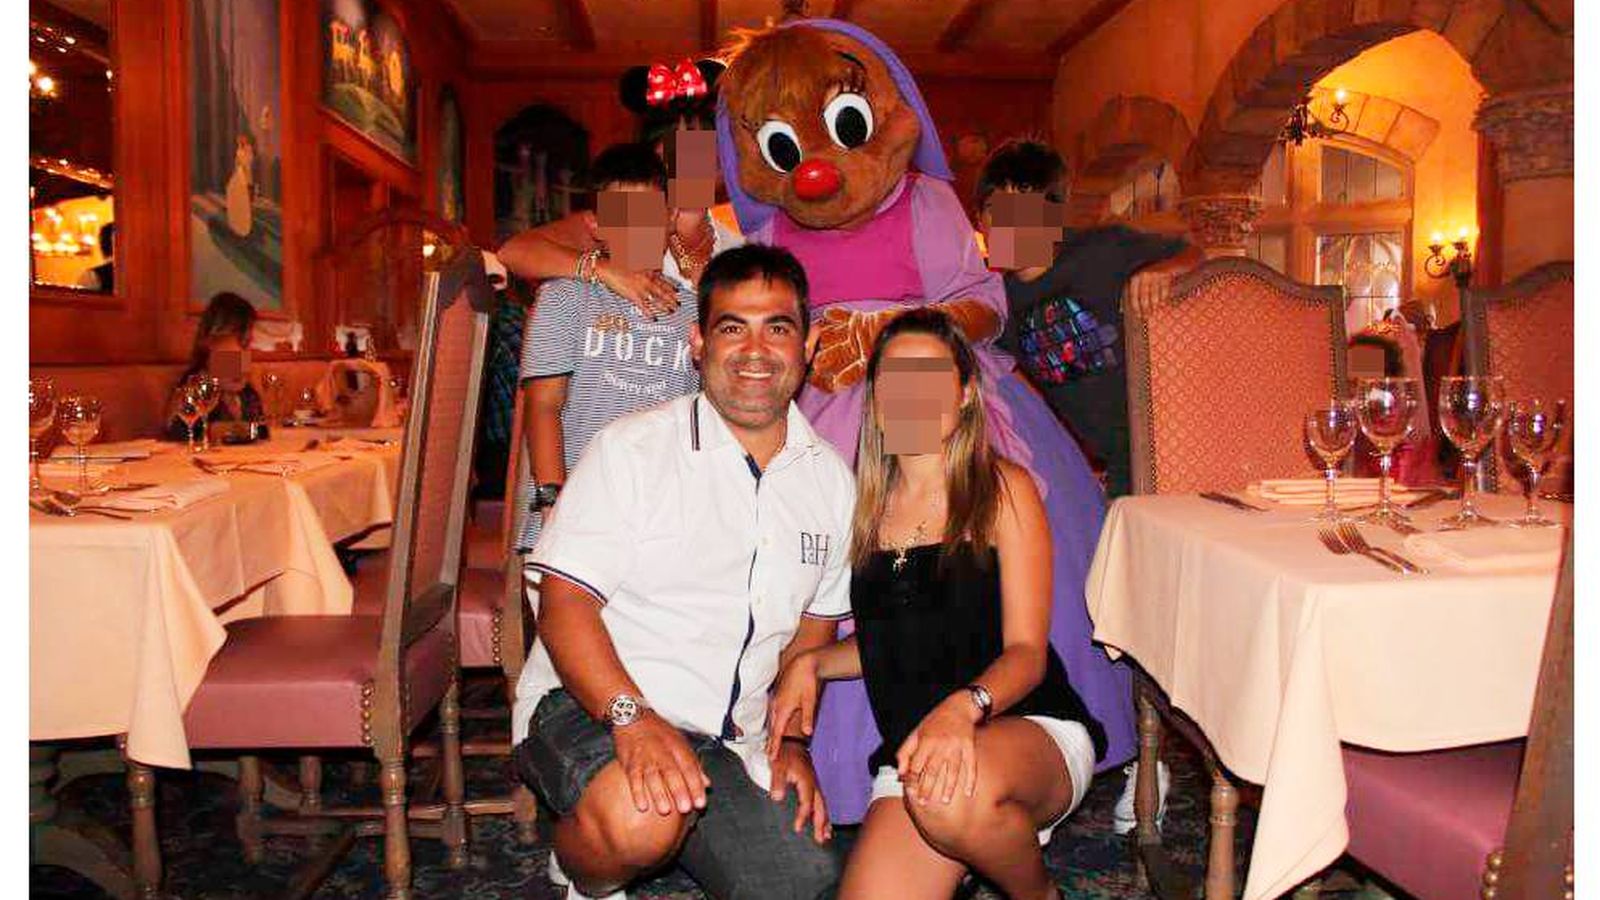 Foto: Anastasio Ferrero Gil, el tarotista y chamán que acaba de ingresar en prisión, en un viaje a Disneyland con su familia.